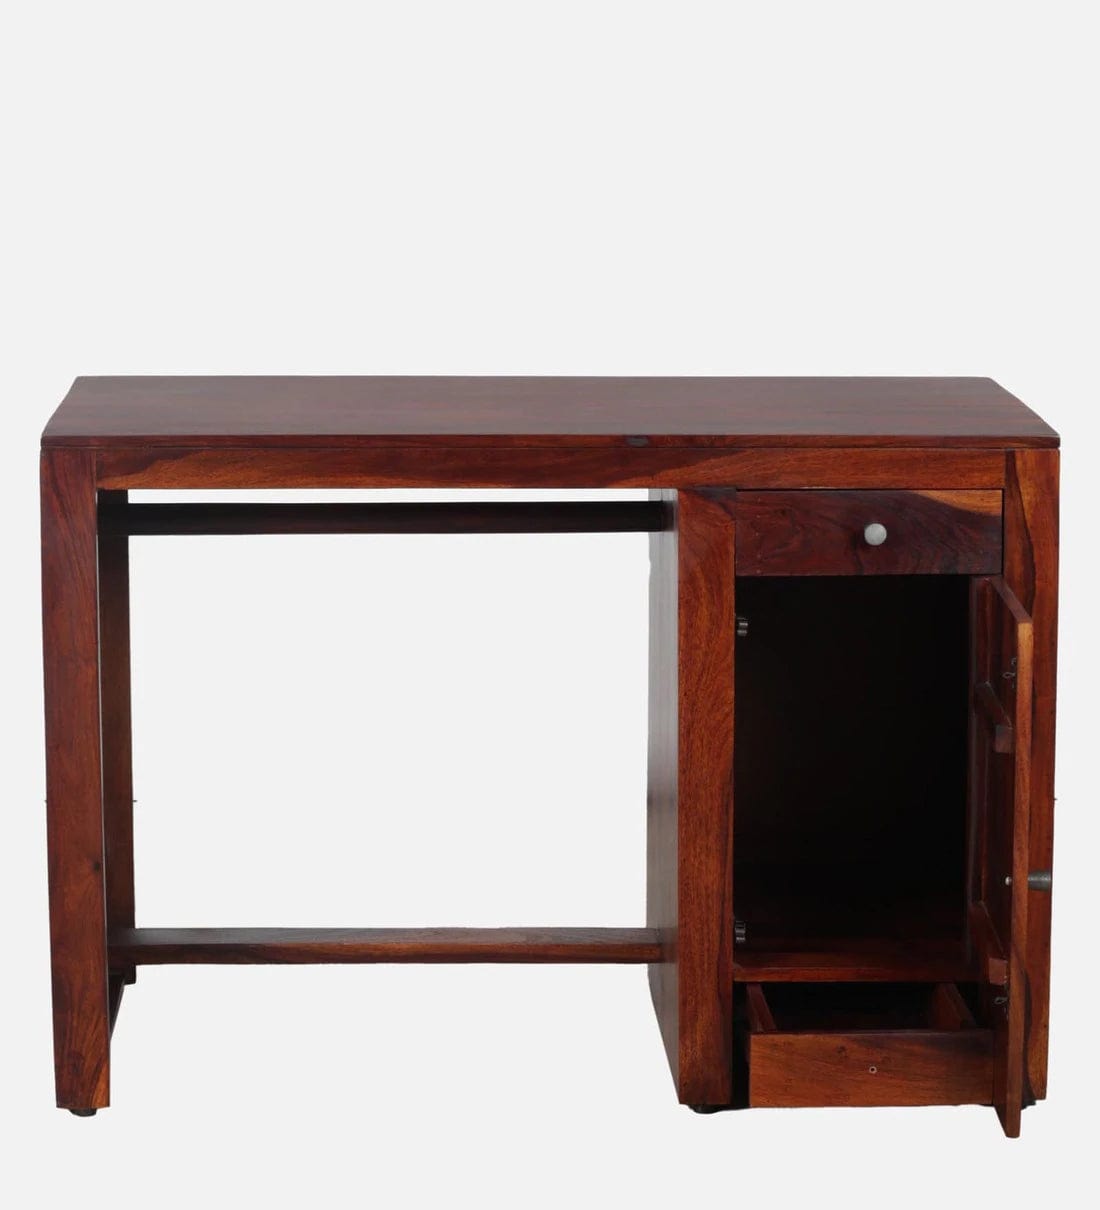 Arno Sheesham Wood Writing Table In Honey Oak Finish,